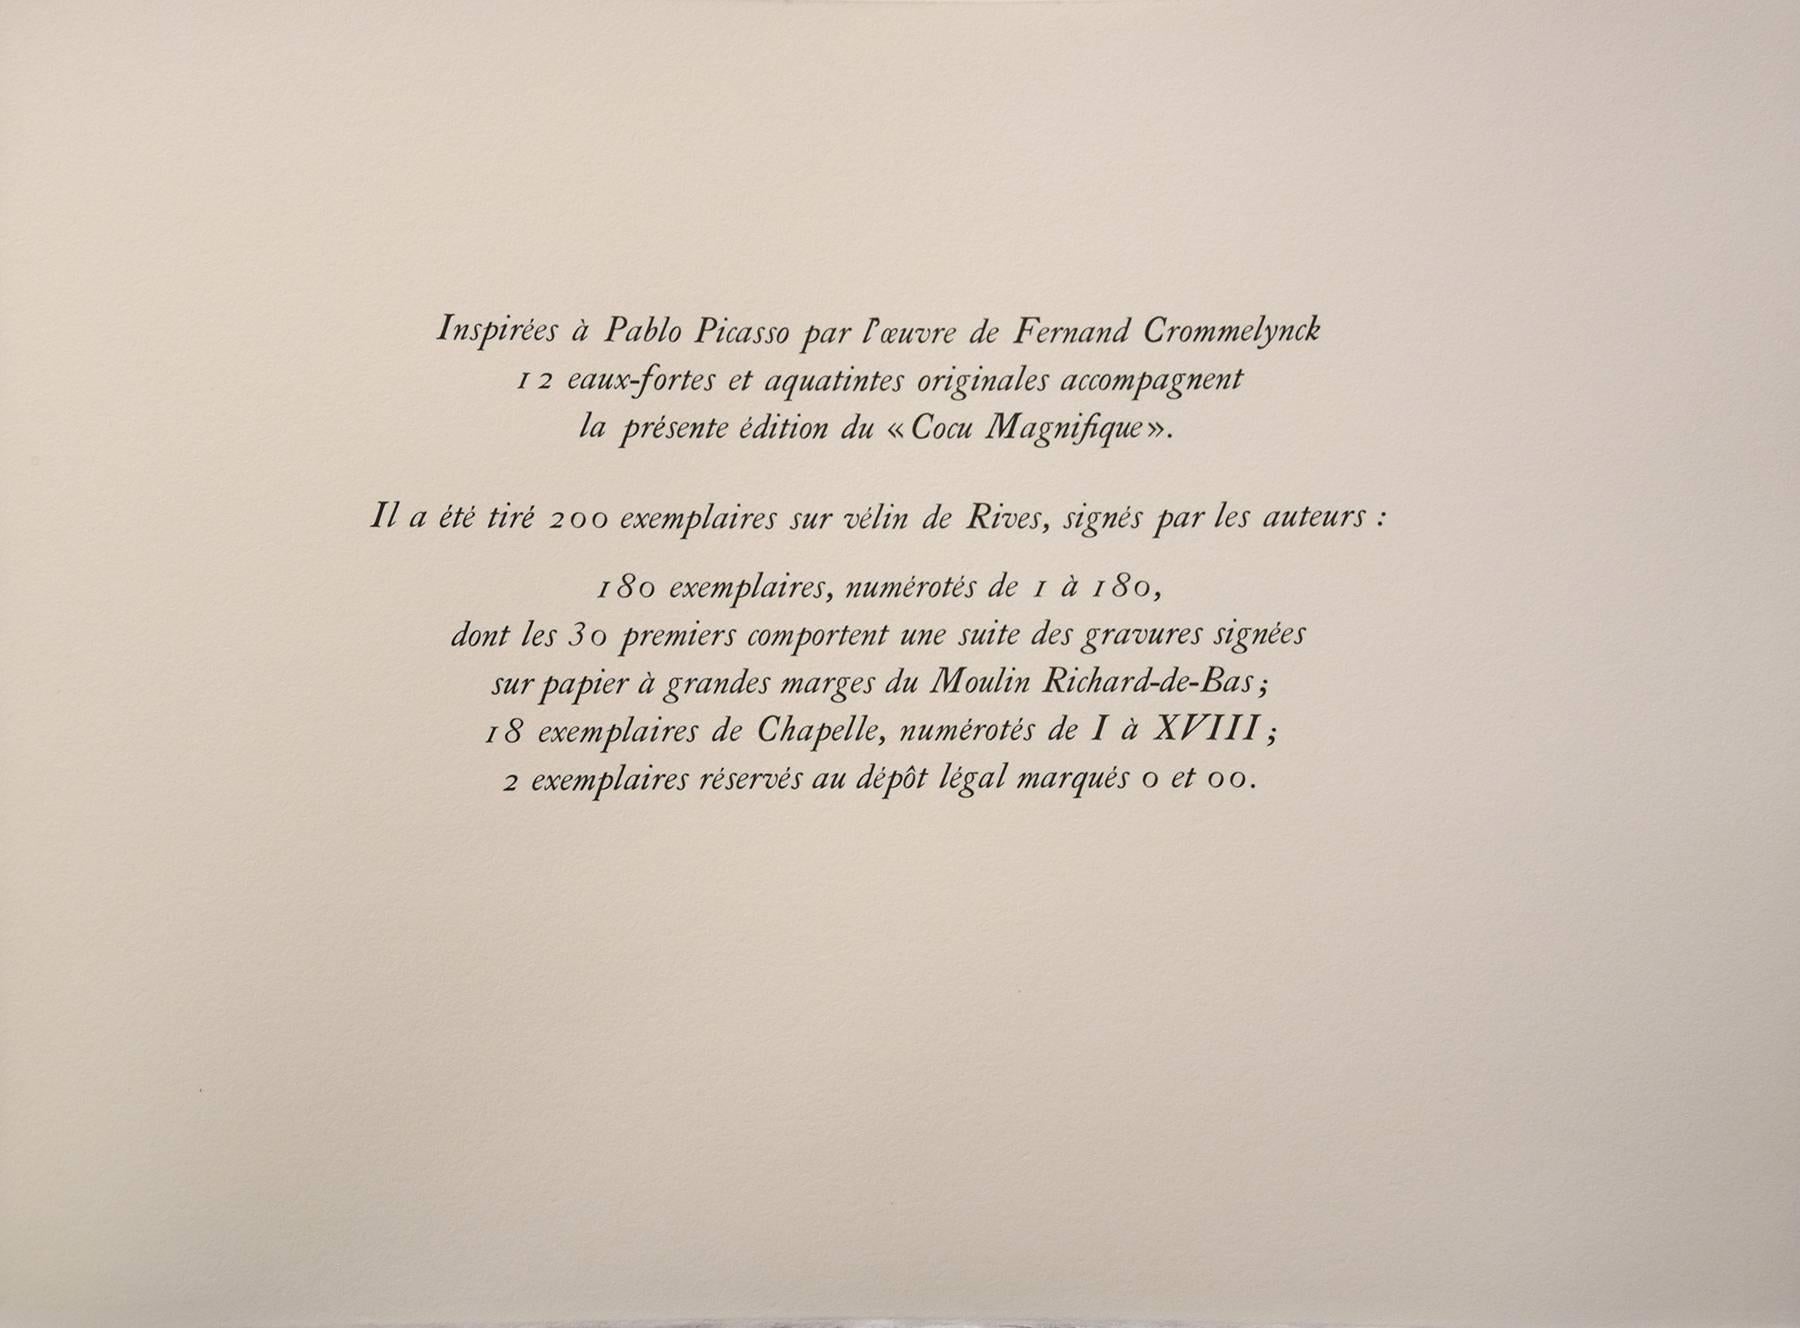 Le Cocu Magnifique - Original Complete Suite of Etchings by Pablo Picasso - 1968 For Sale 5